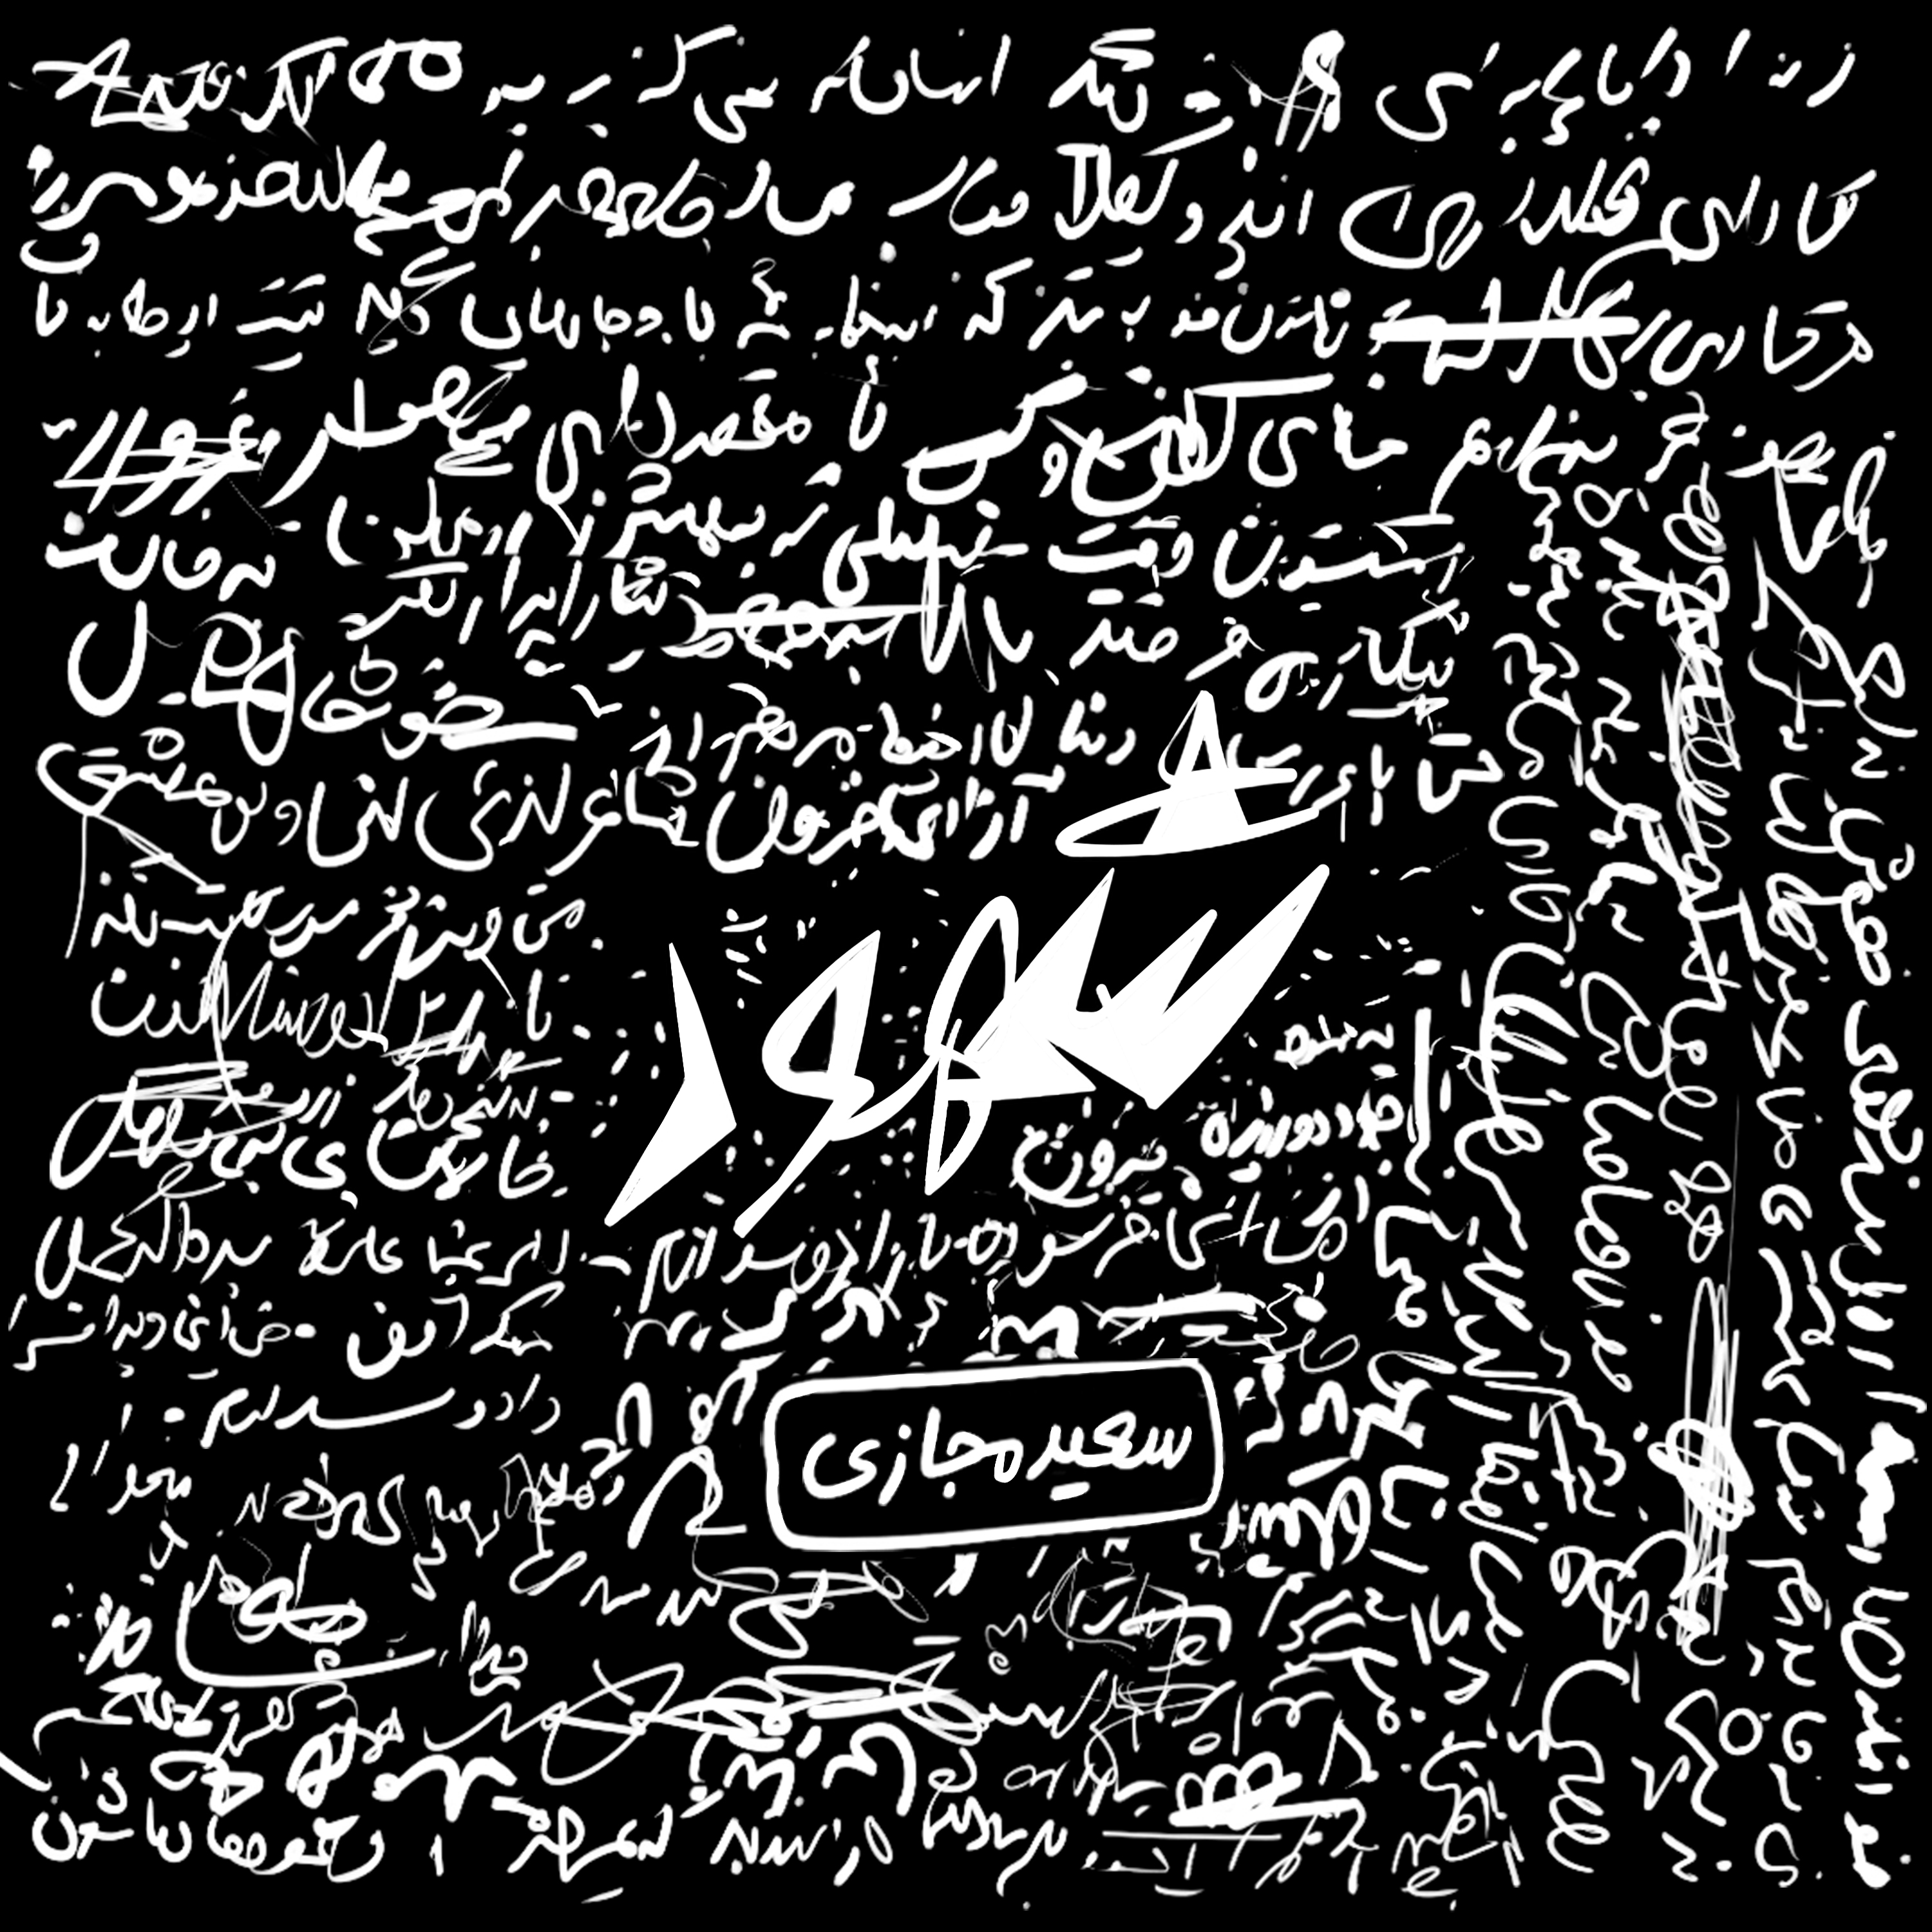  دانلود آهنگ جدید سعید مجازی - زمین گرم | Download New Music By SaeeD Majazi - Zamine Garm